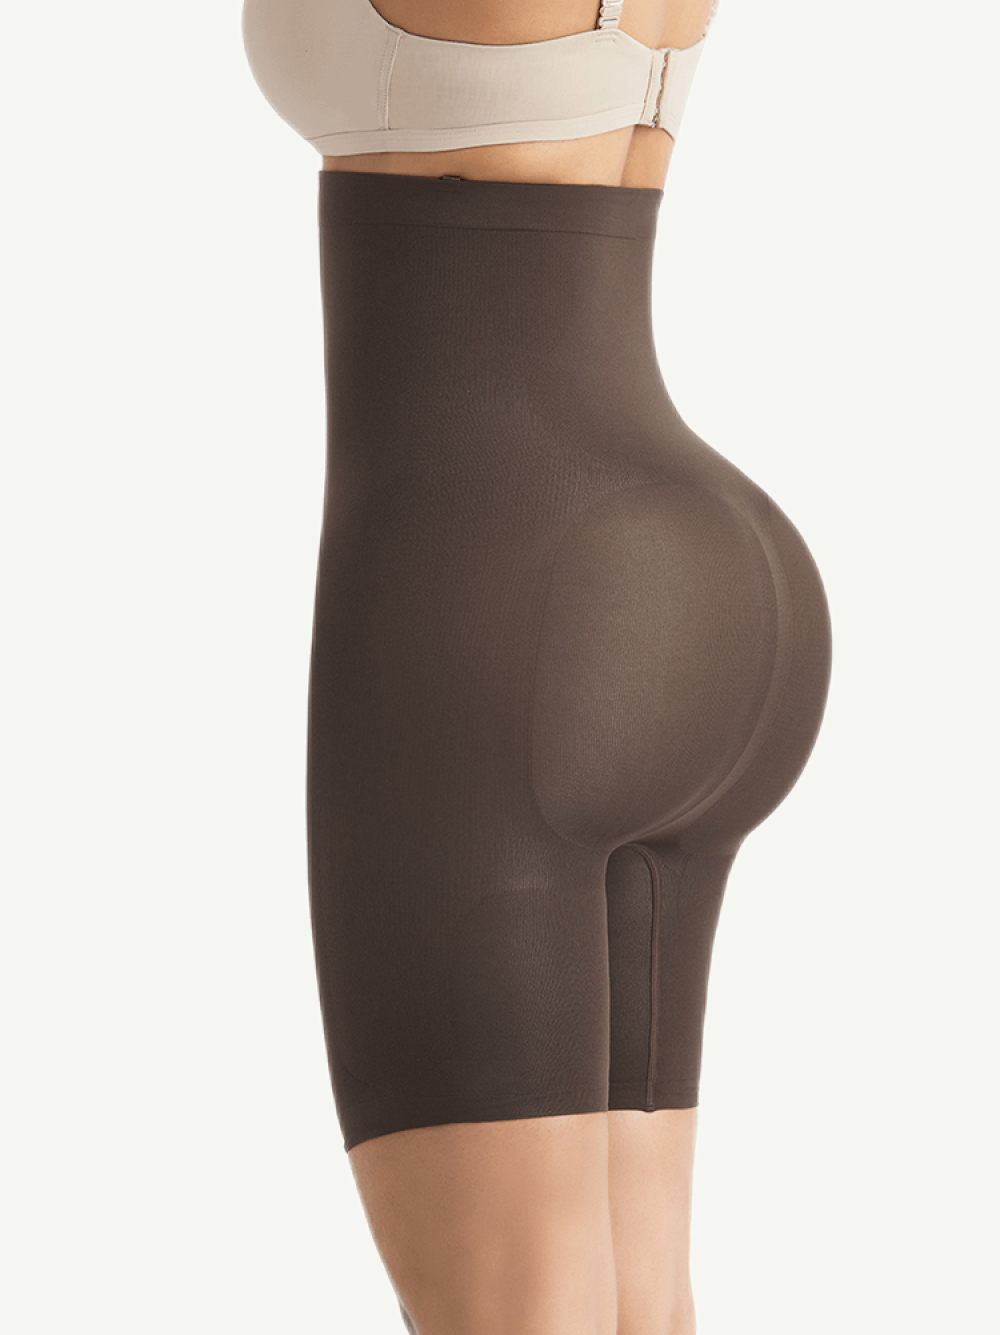 Abdominal Slimmer Dark Brown Seamless Buckle Butt Enhance Plus Size